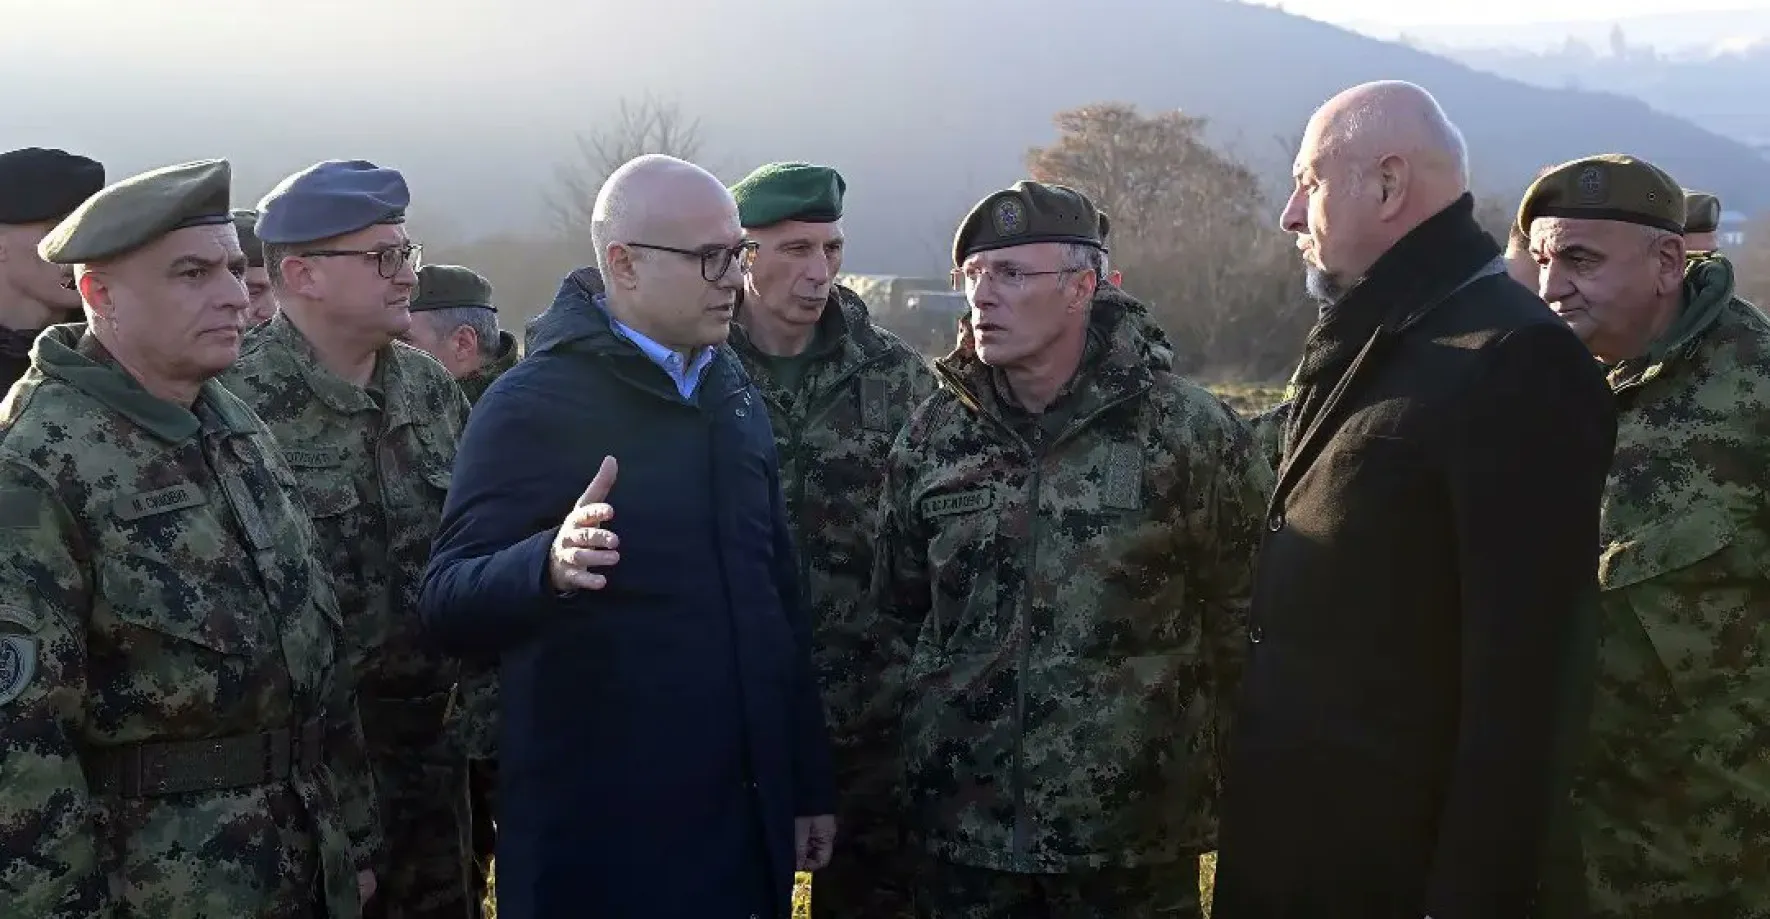 Srbská armáda uvedla kvůli Kosovu své jednotky do stavu zvýšené pohotovosti